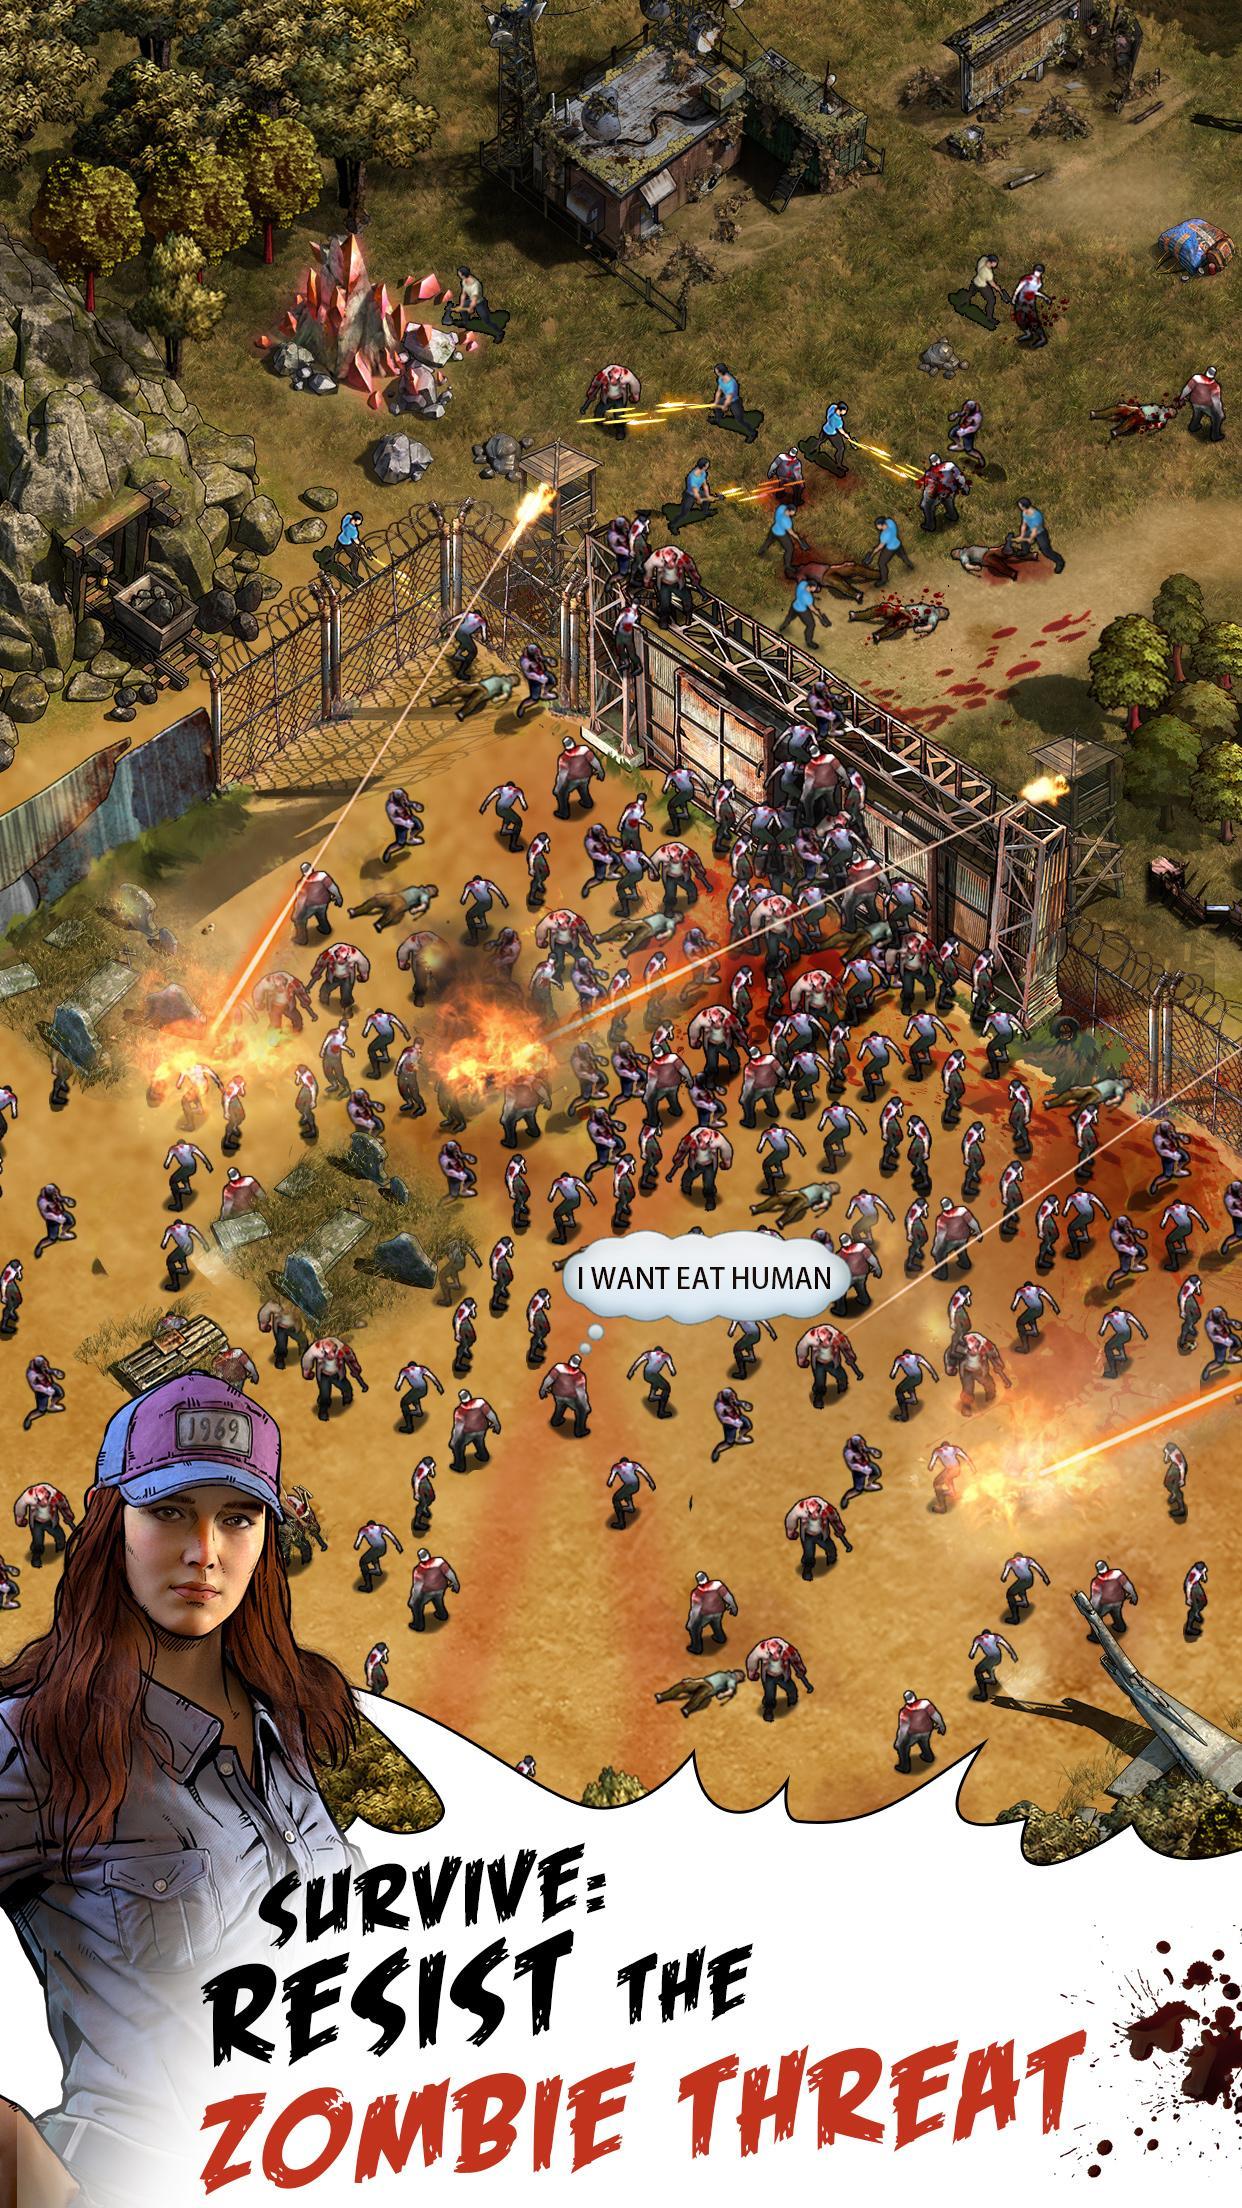 Screenshot 1 of jogo de sobrevivência 1.11.3